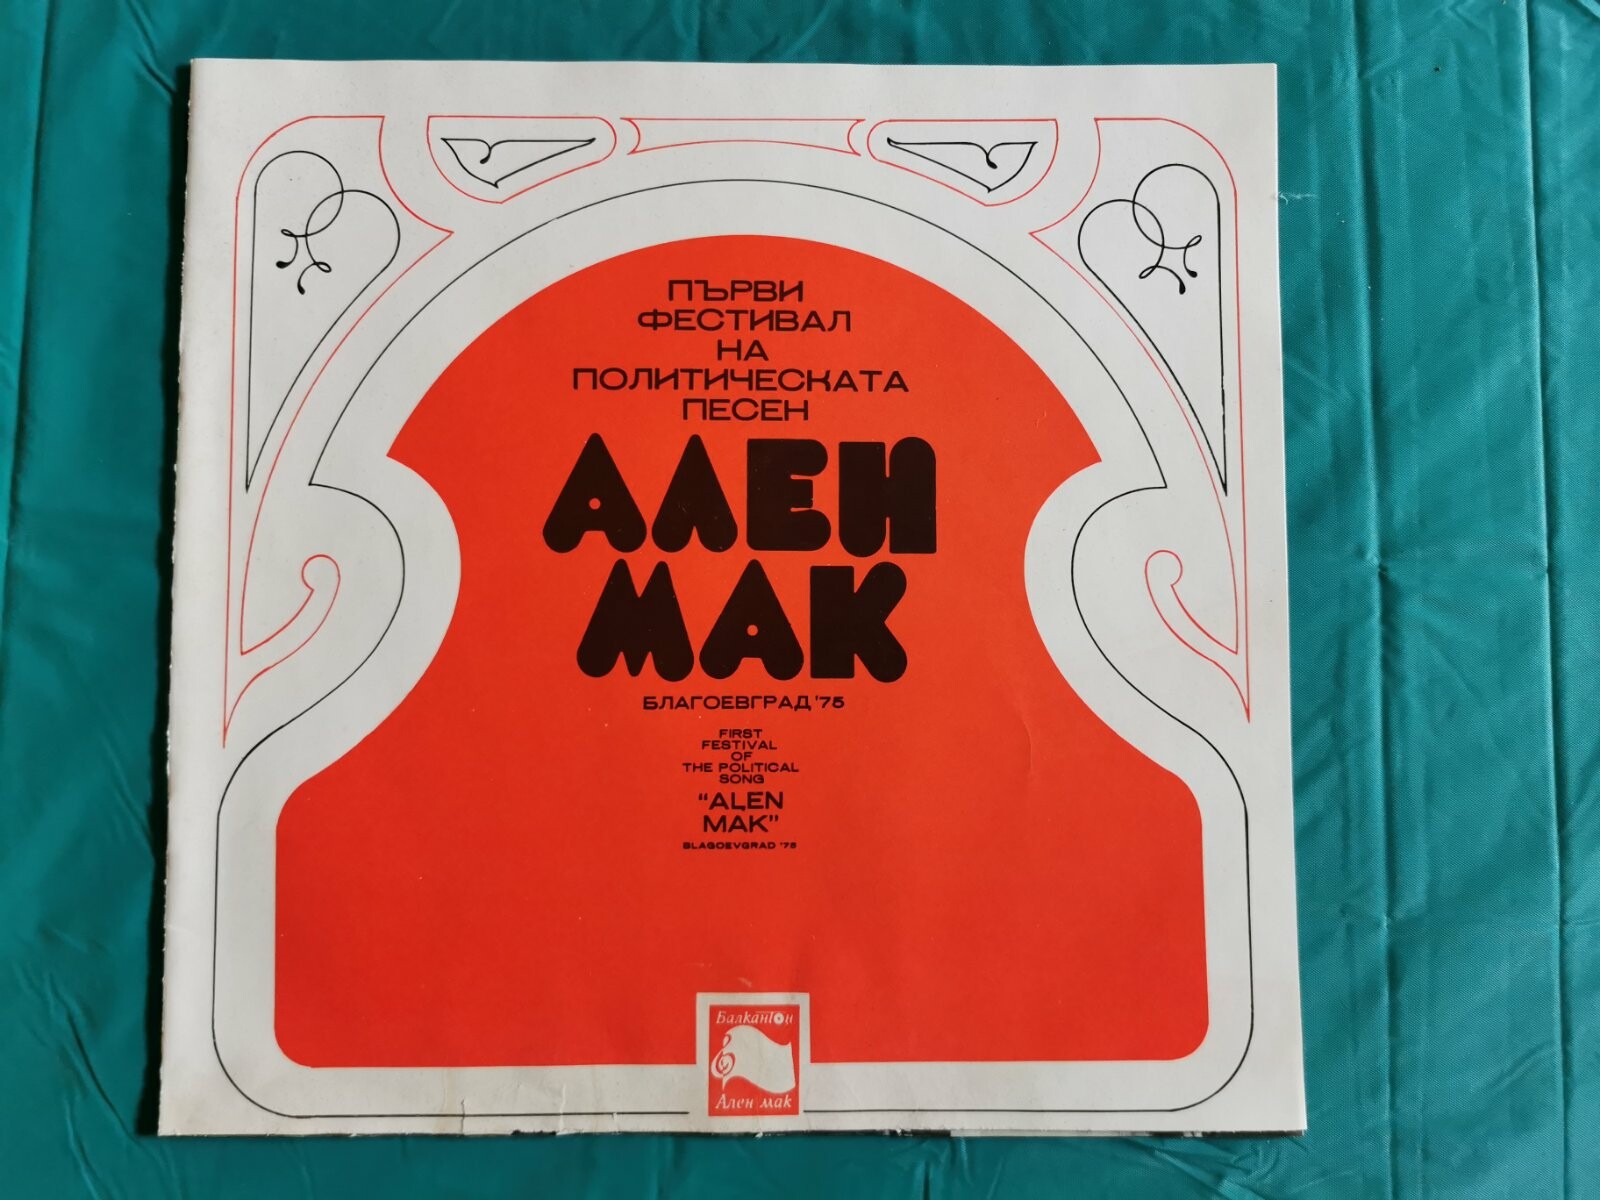 Първи фестивал на политическата песен "Ален мак", Благоевград '75 (5 плочи)